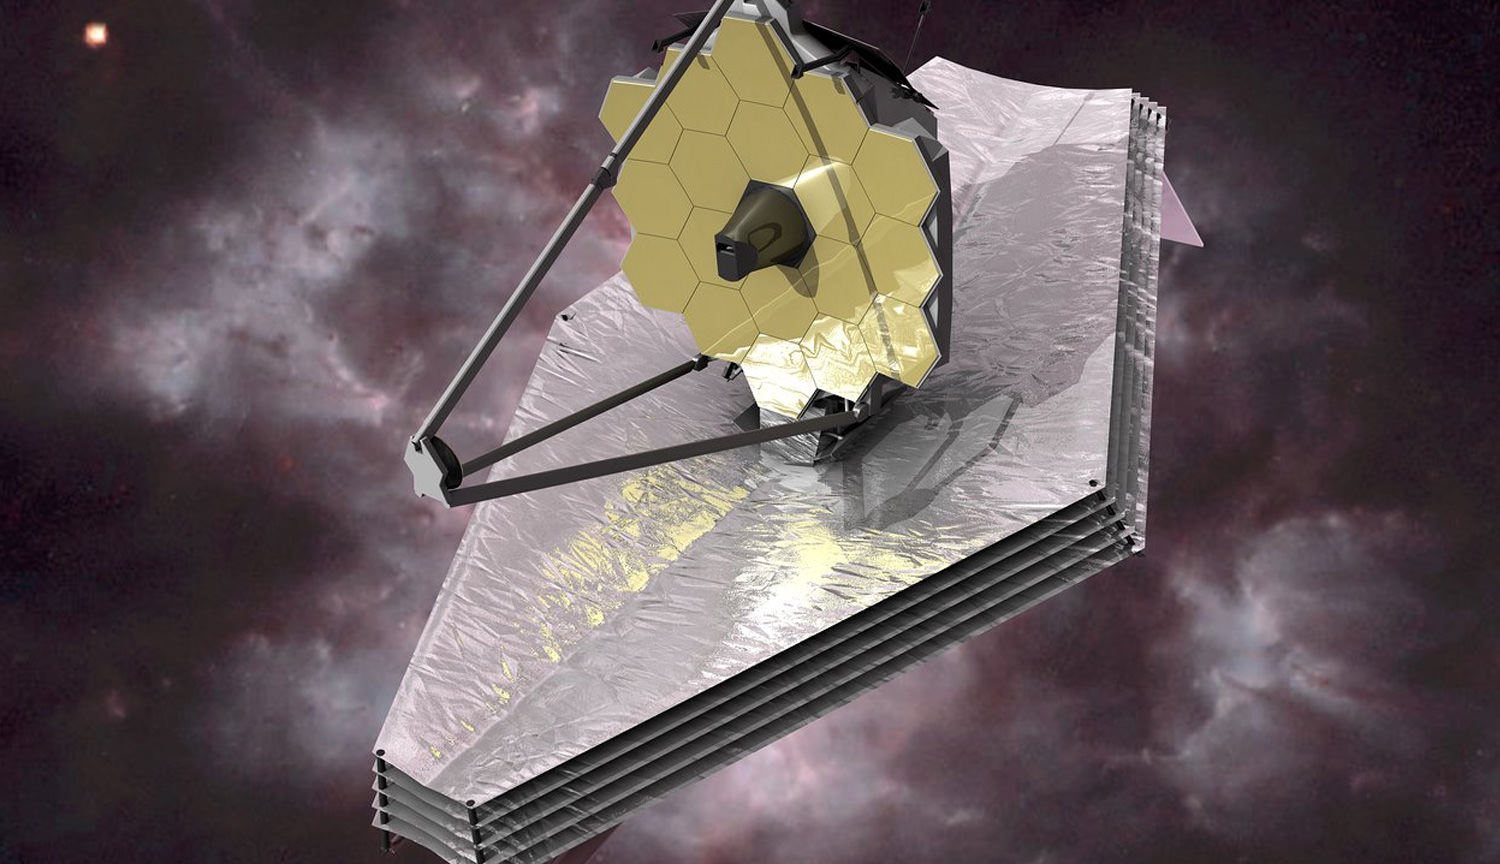 La NASA ha verificado la funcionalidad de los sistemas de comunicación del telescopio james webb